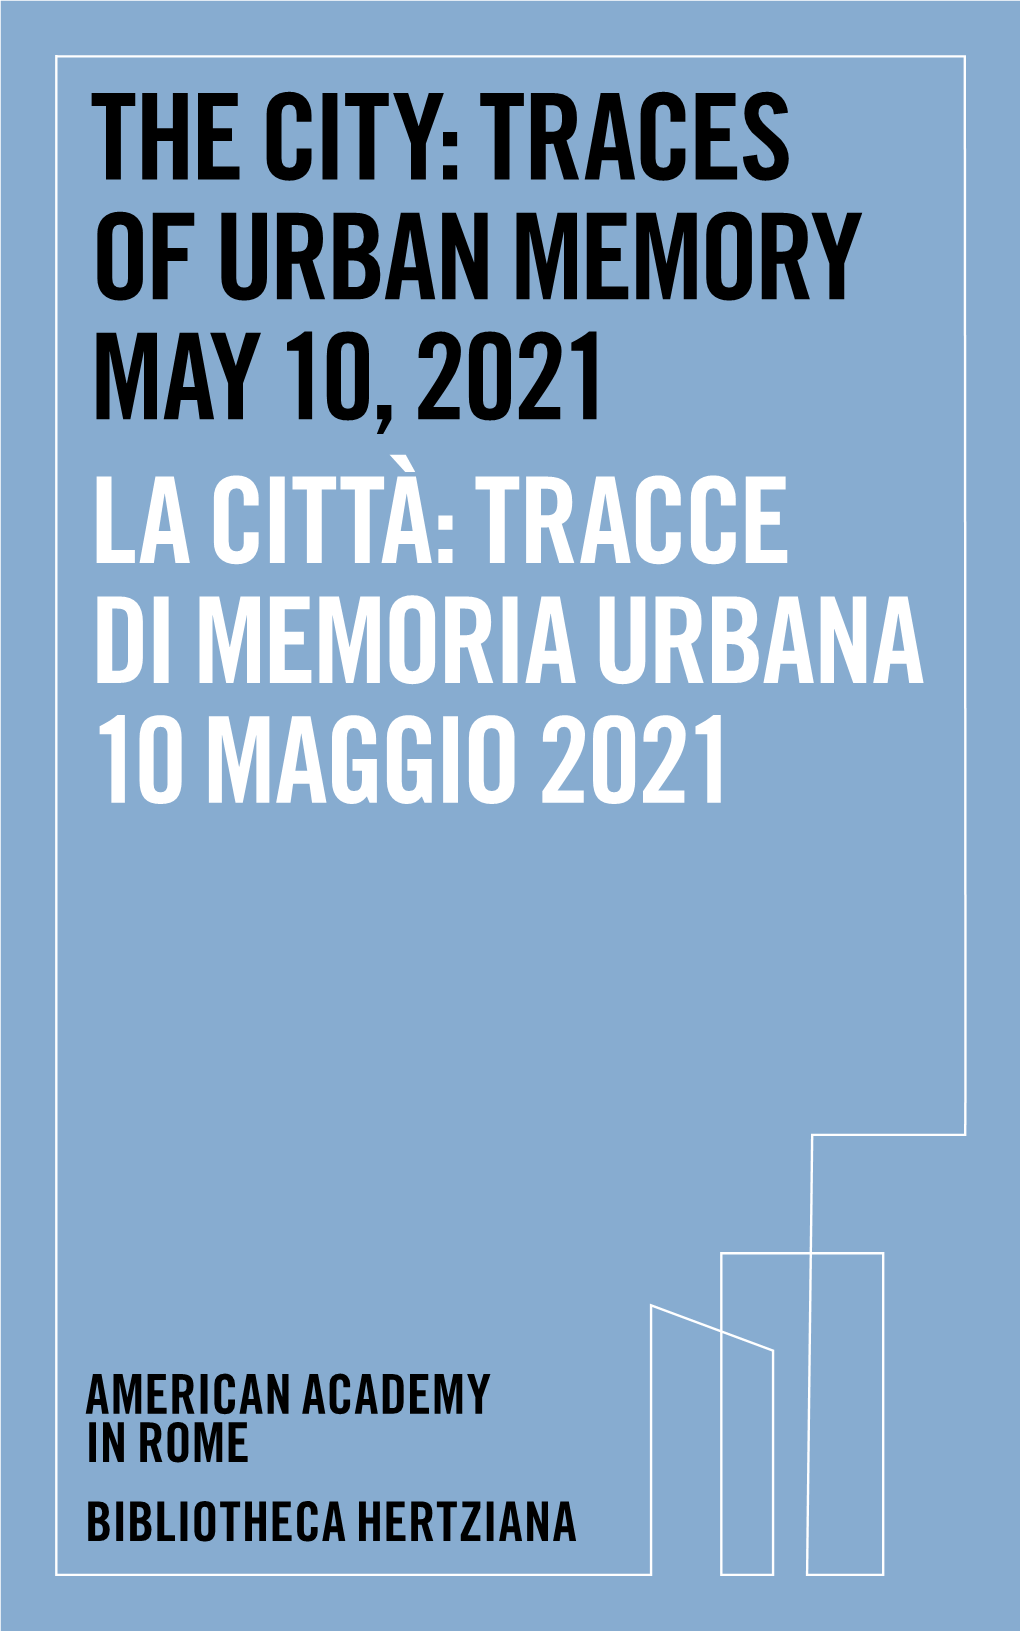 The City: Traces of Urban Memory May 10, 2021 La Città: Tracce Di Memoria Urbana 10 Maggio 2021